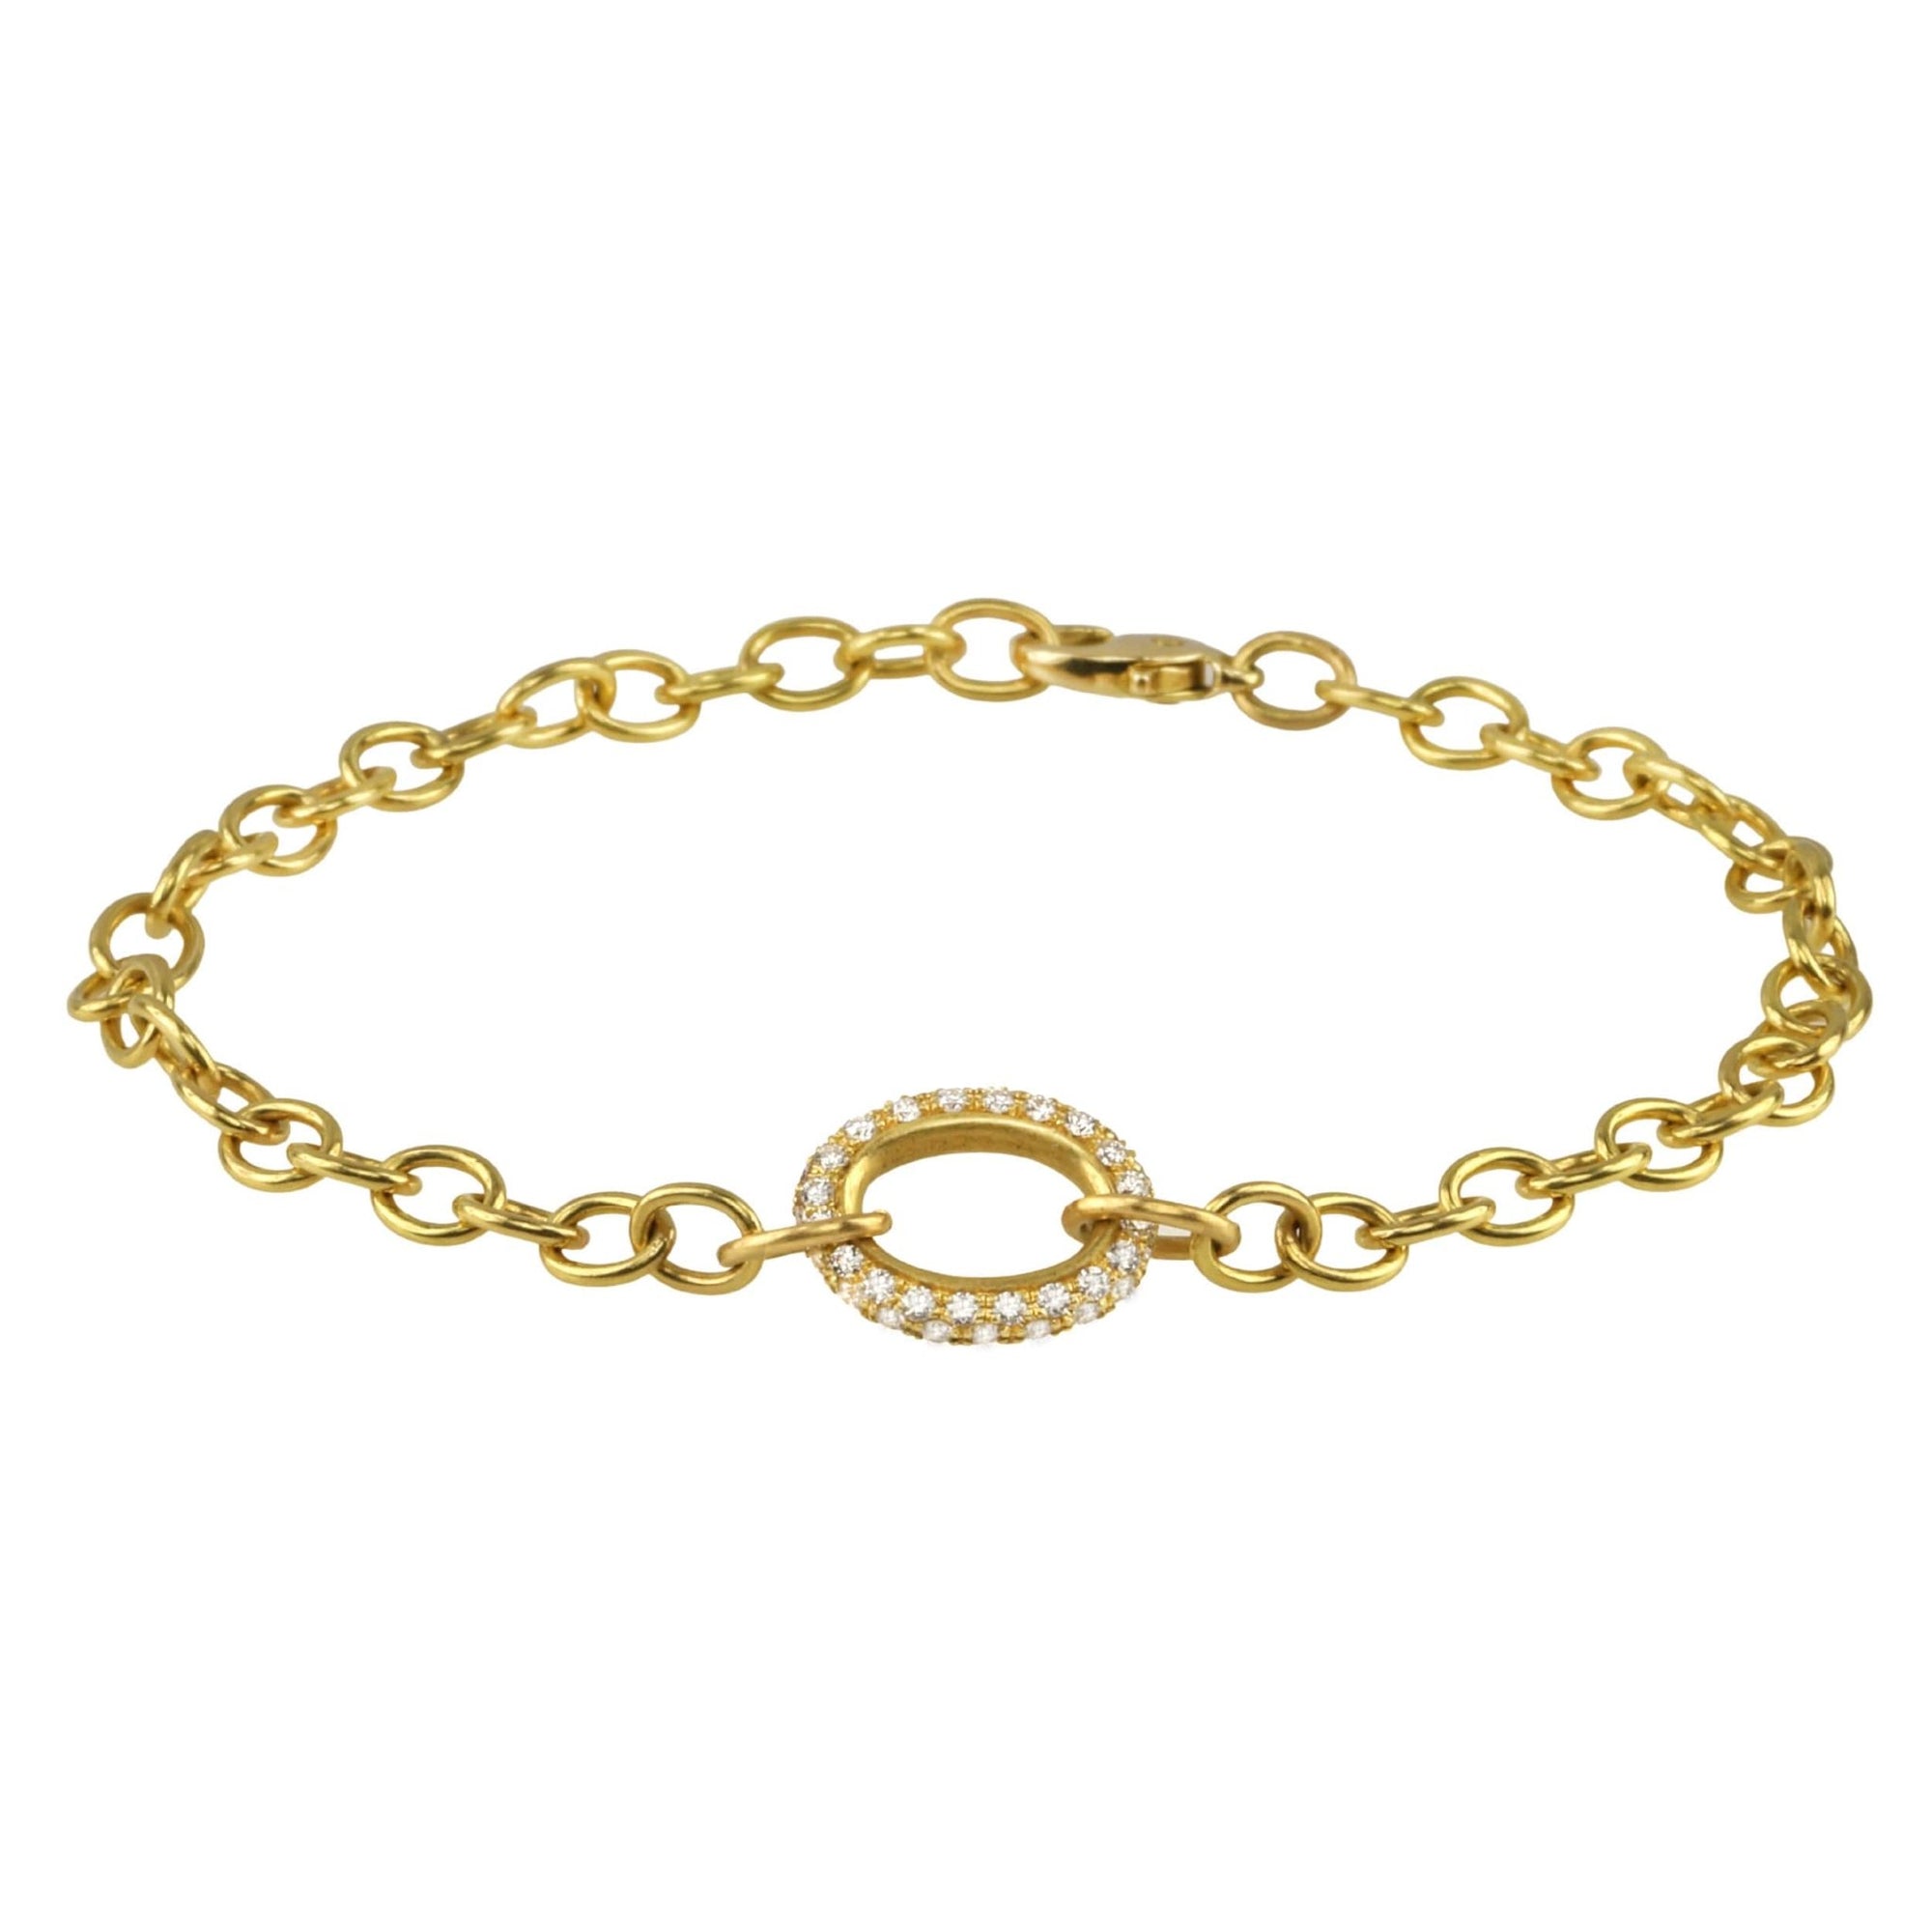 Caroline Ellen 20K Gold Handmade Small Oval Link Bracelet with Pave Diamond Oval Centerpiece